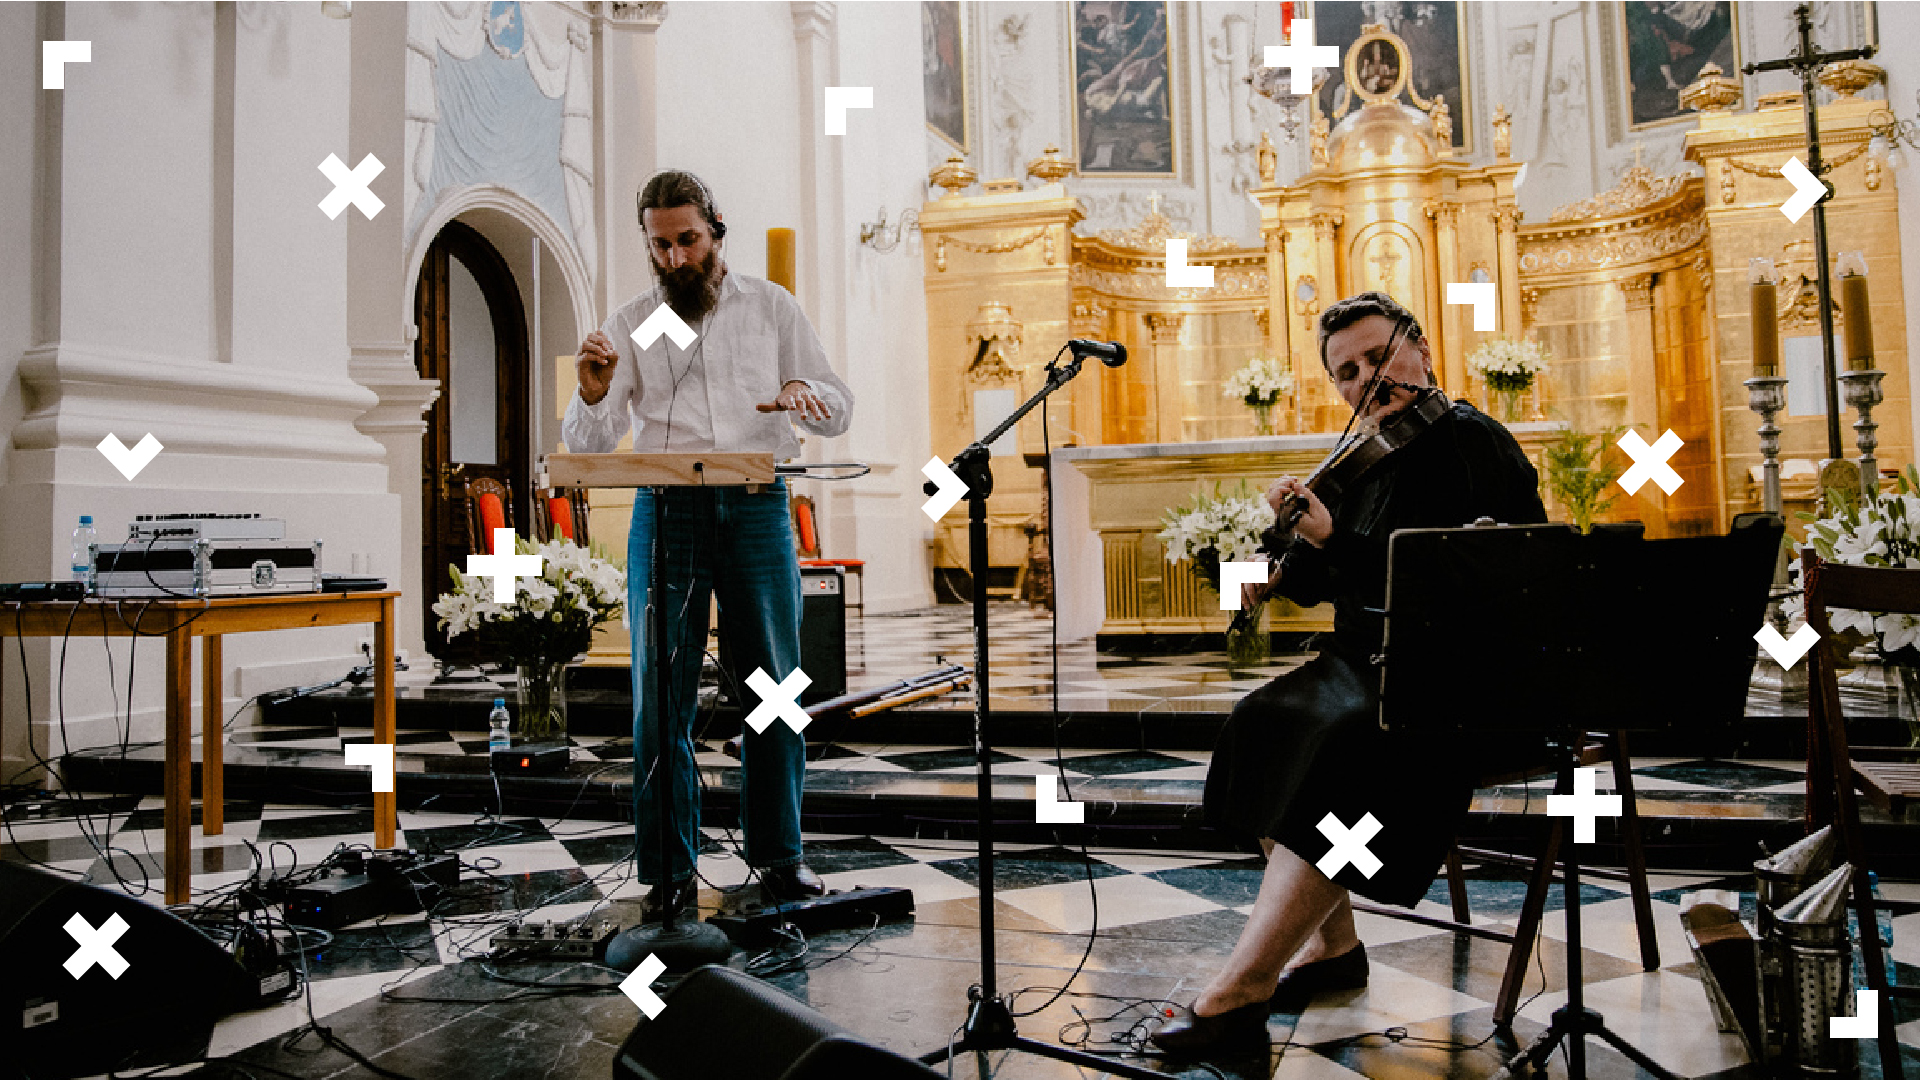 Wnętrze kościoła oo. Dominikanów. Po lewej stronie mężczyzna grający na bębenku, po prawej kobieta grająca na skrzypcach.